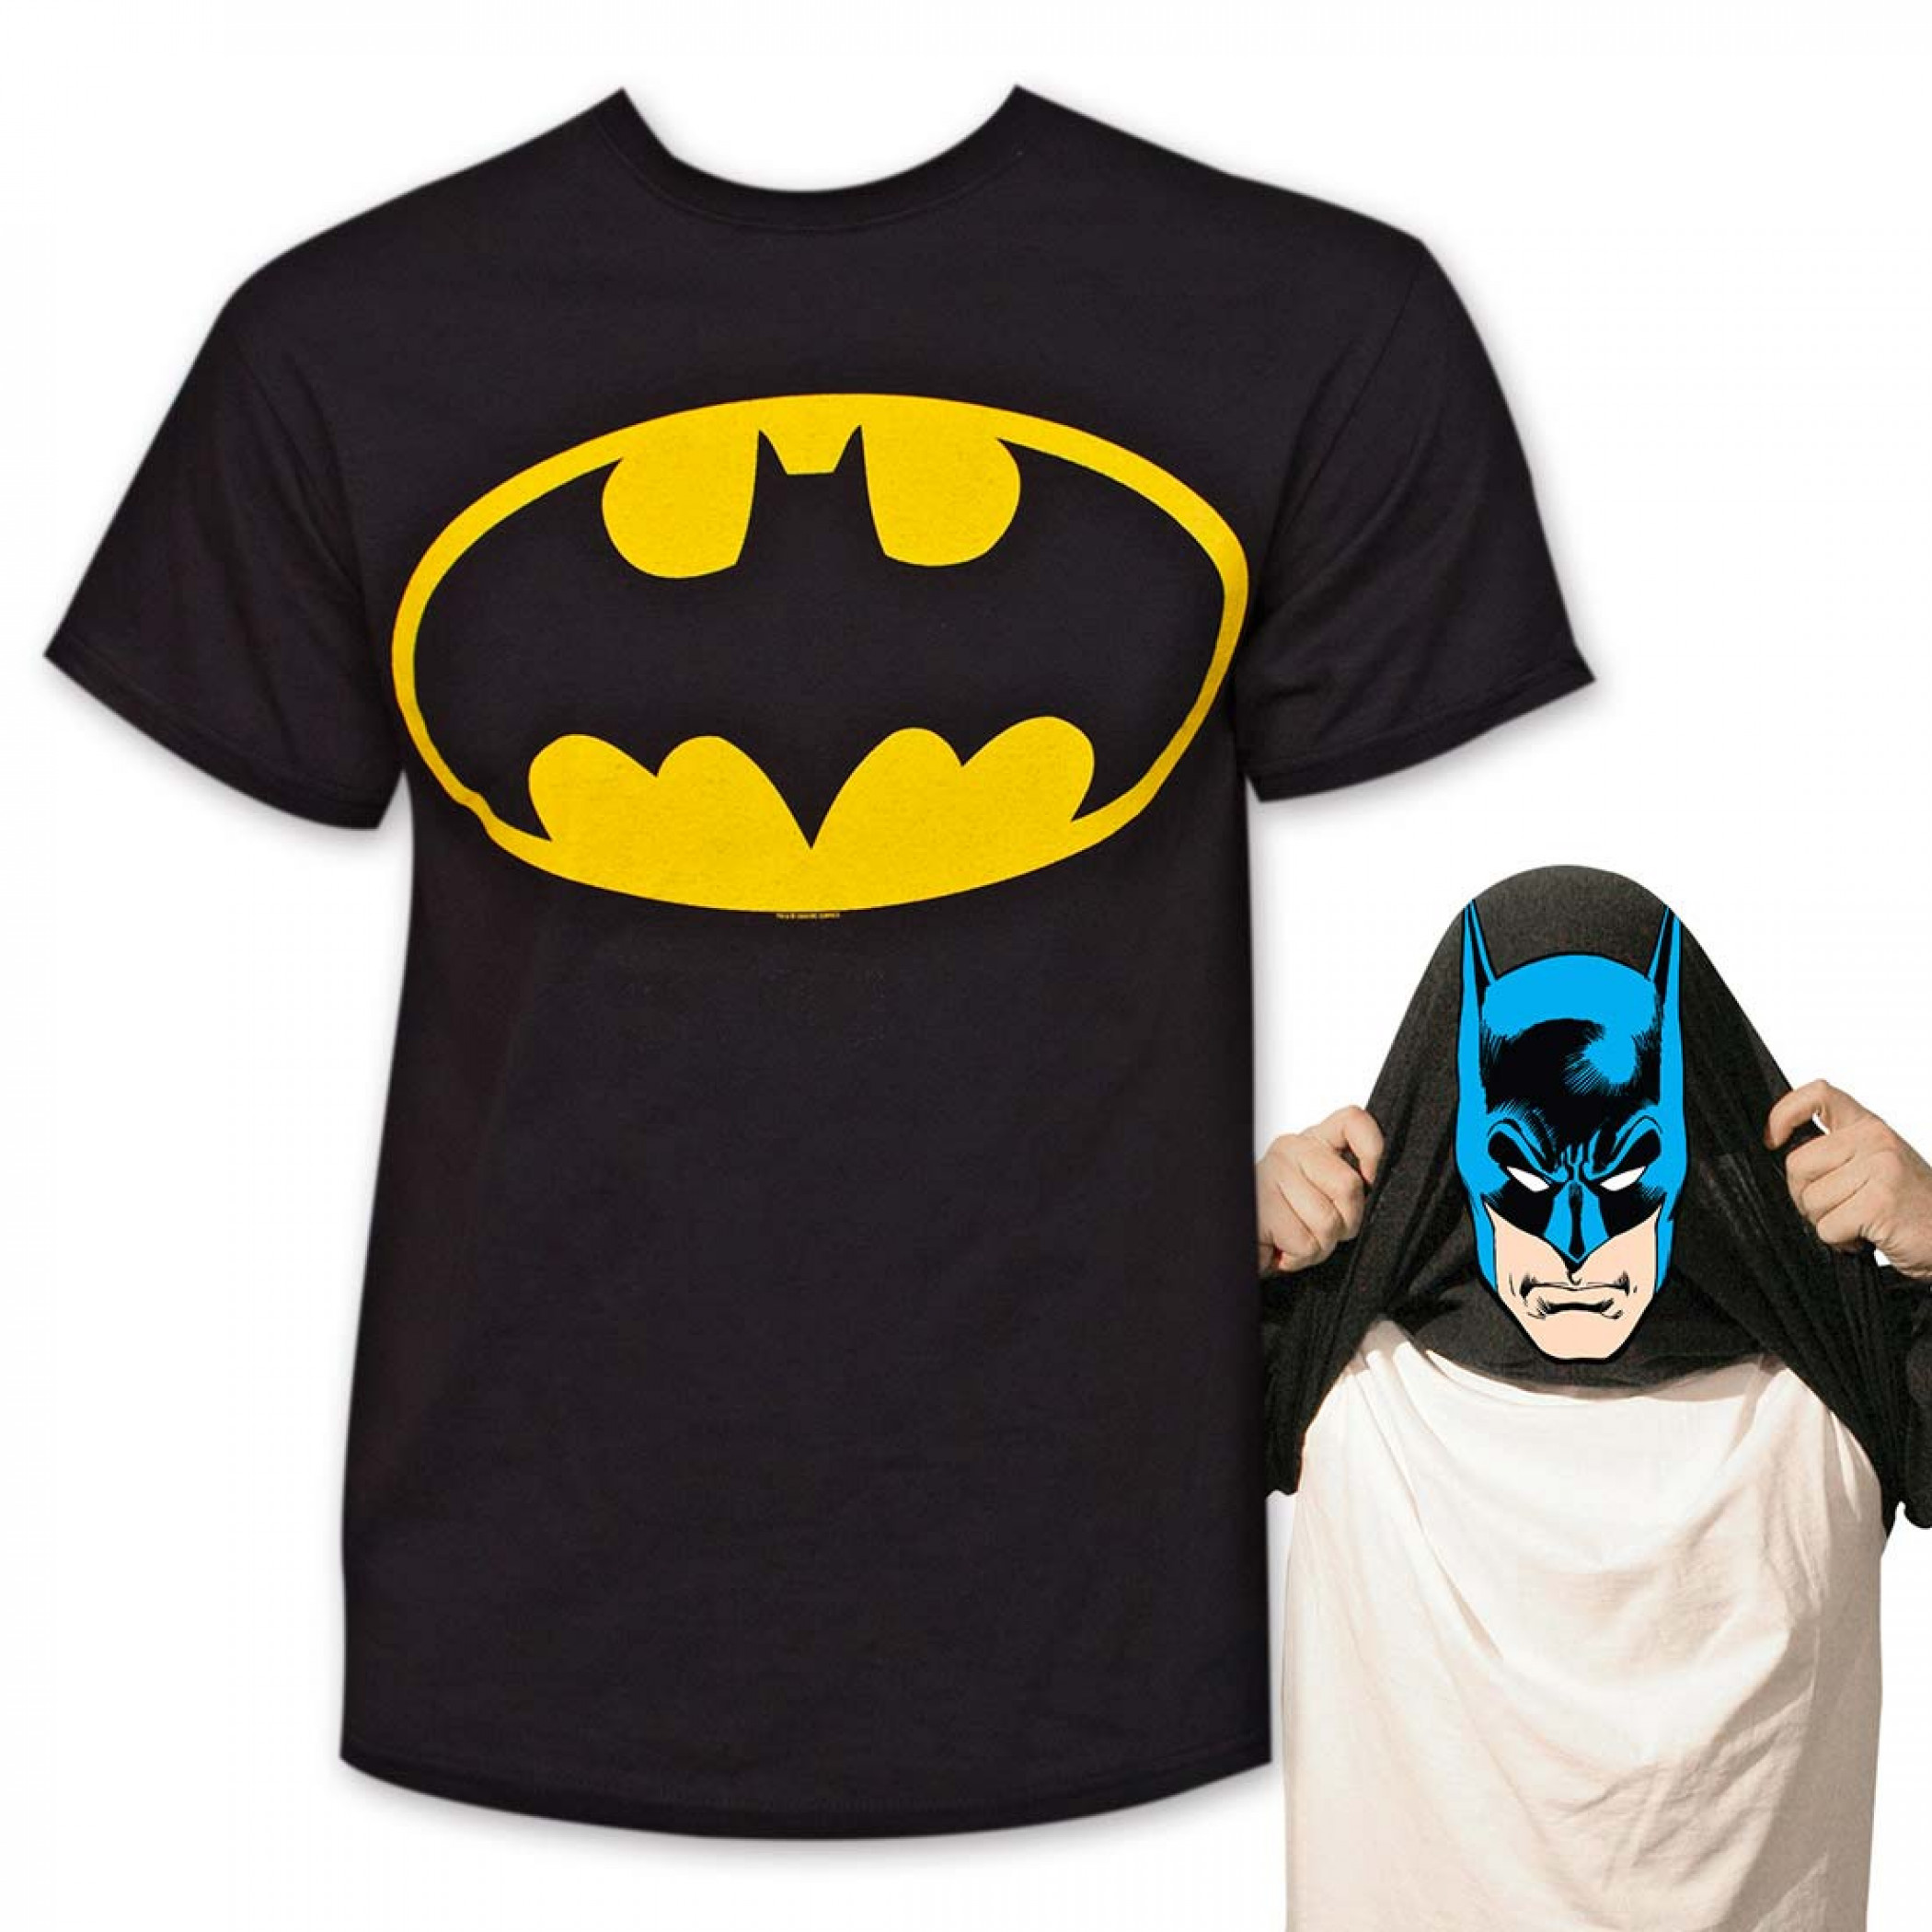 Batman цена. Бэтмен т ширт. Футболка Бэтмена s22. Черная футболка Бэтмен. Футболка i am Batman.